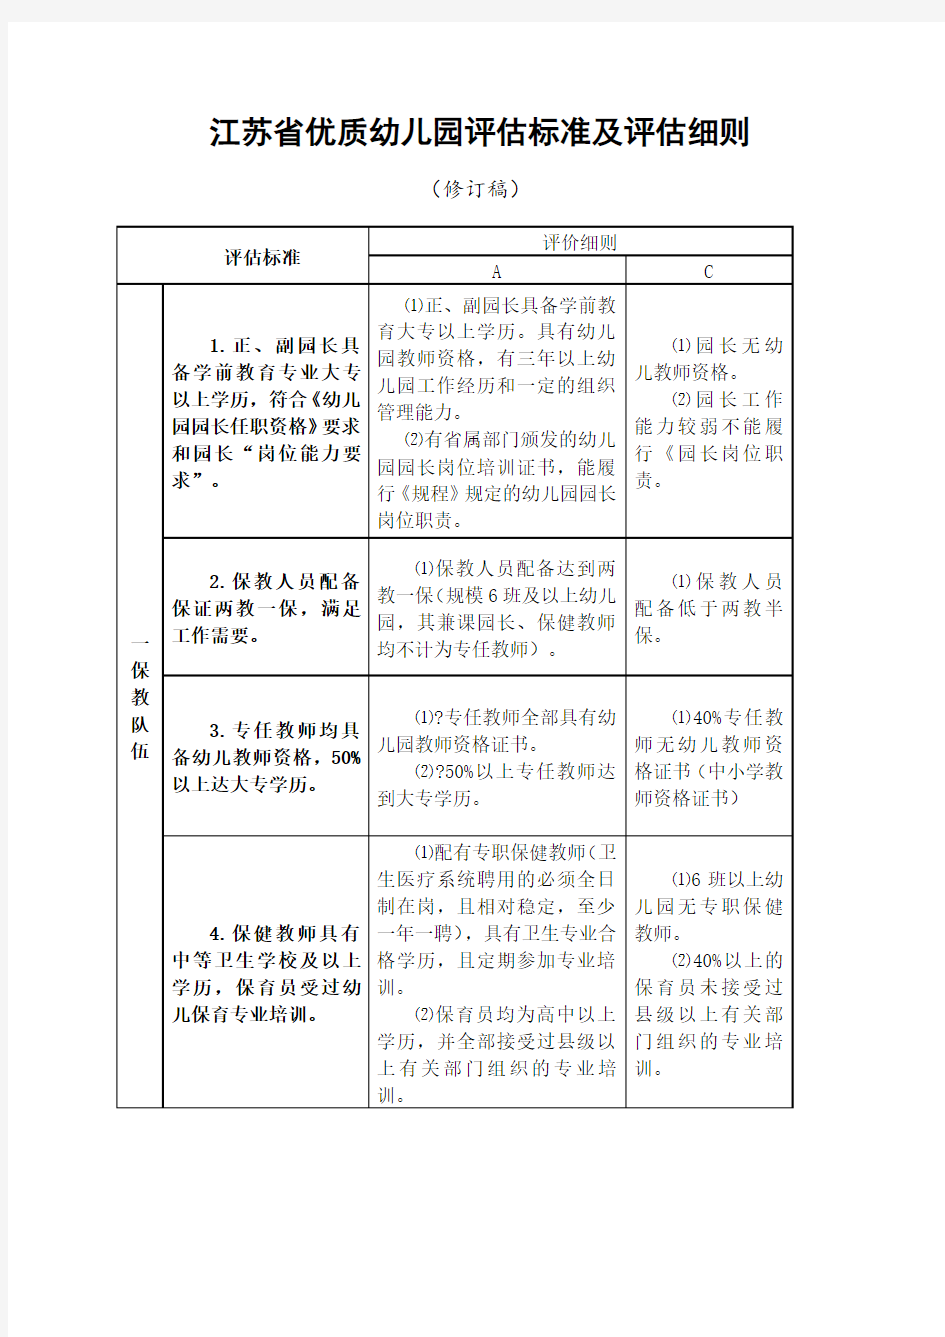 江苏省优质幼儿园评估标准及评估细则